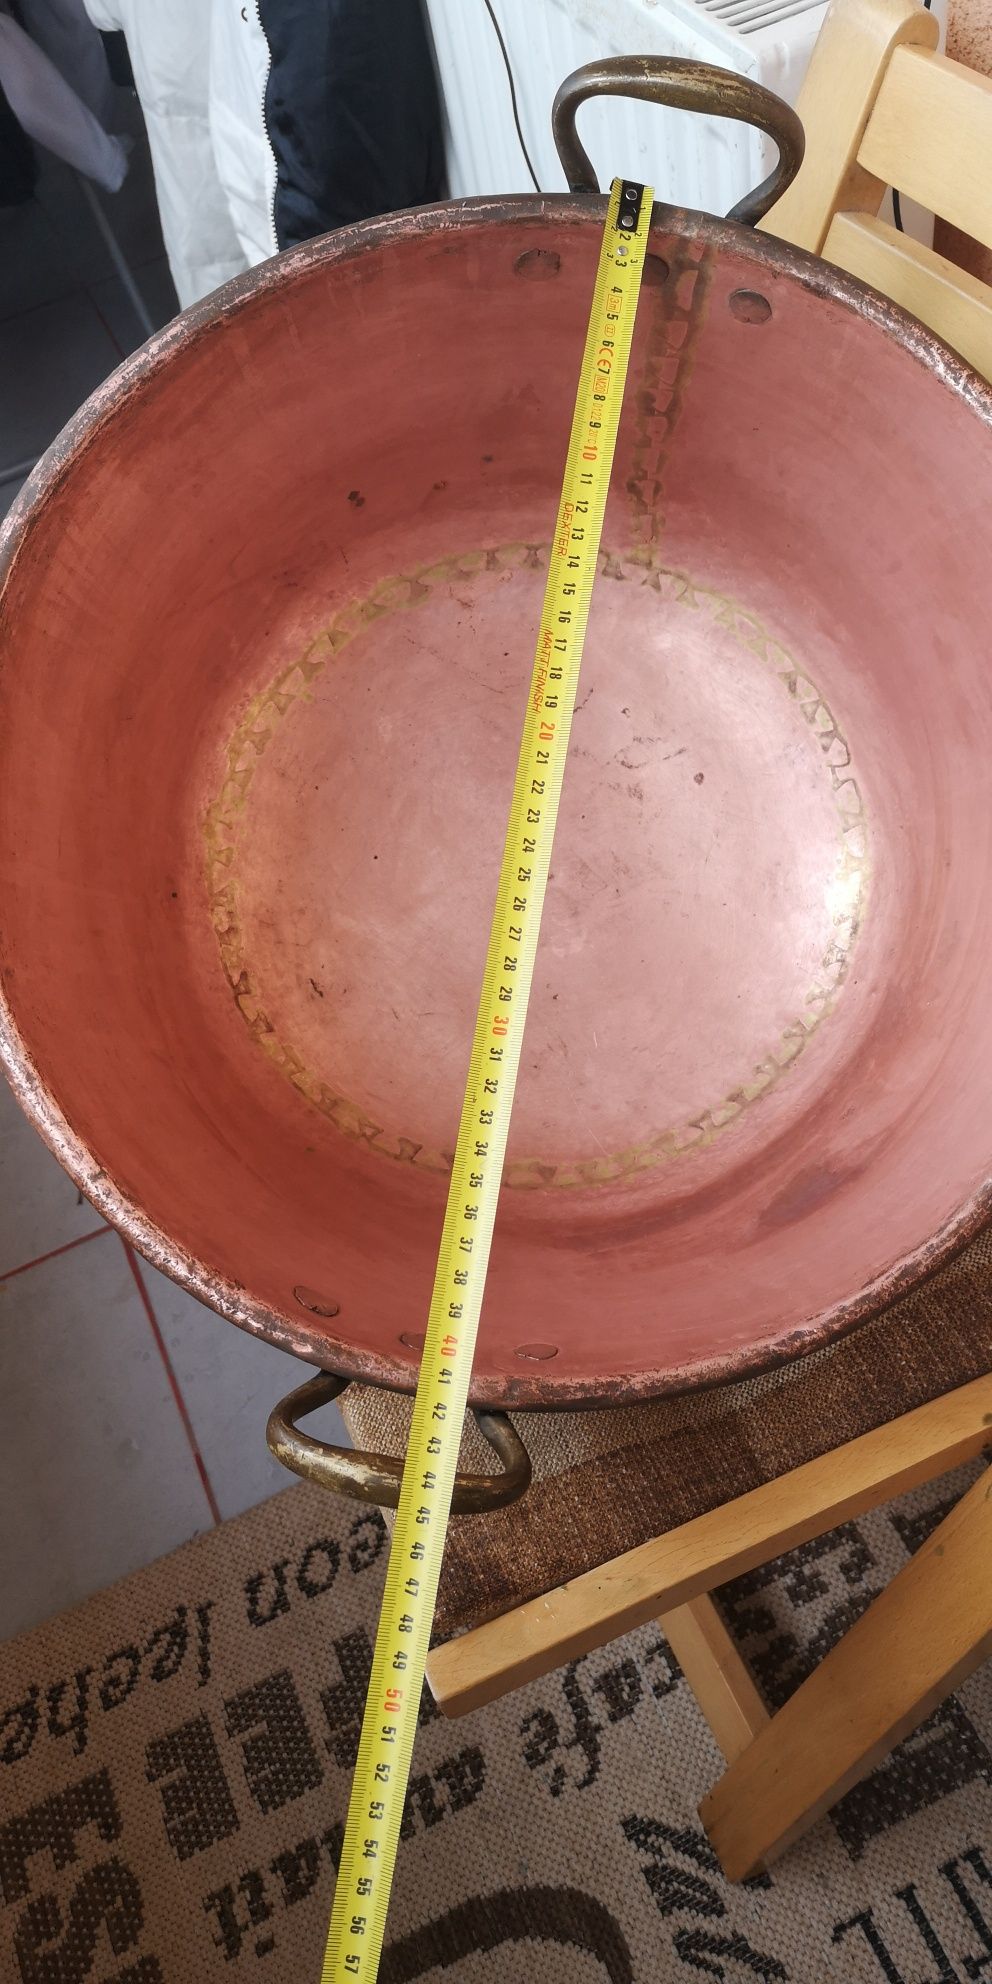 Ceaun cupru vechi 25 litri